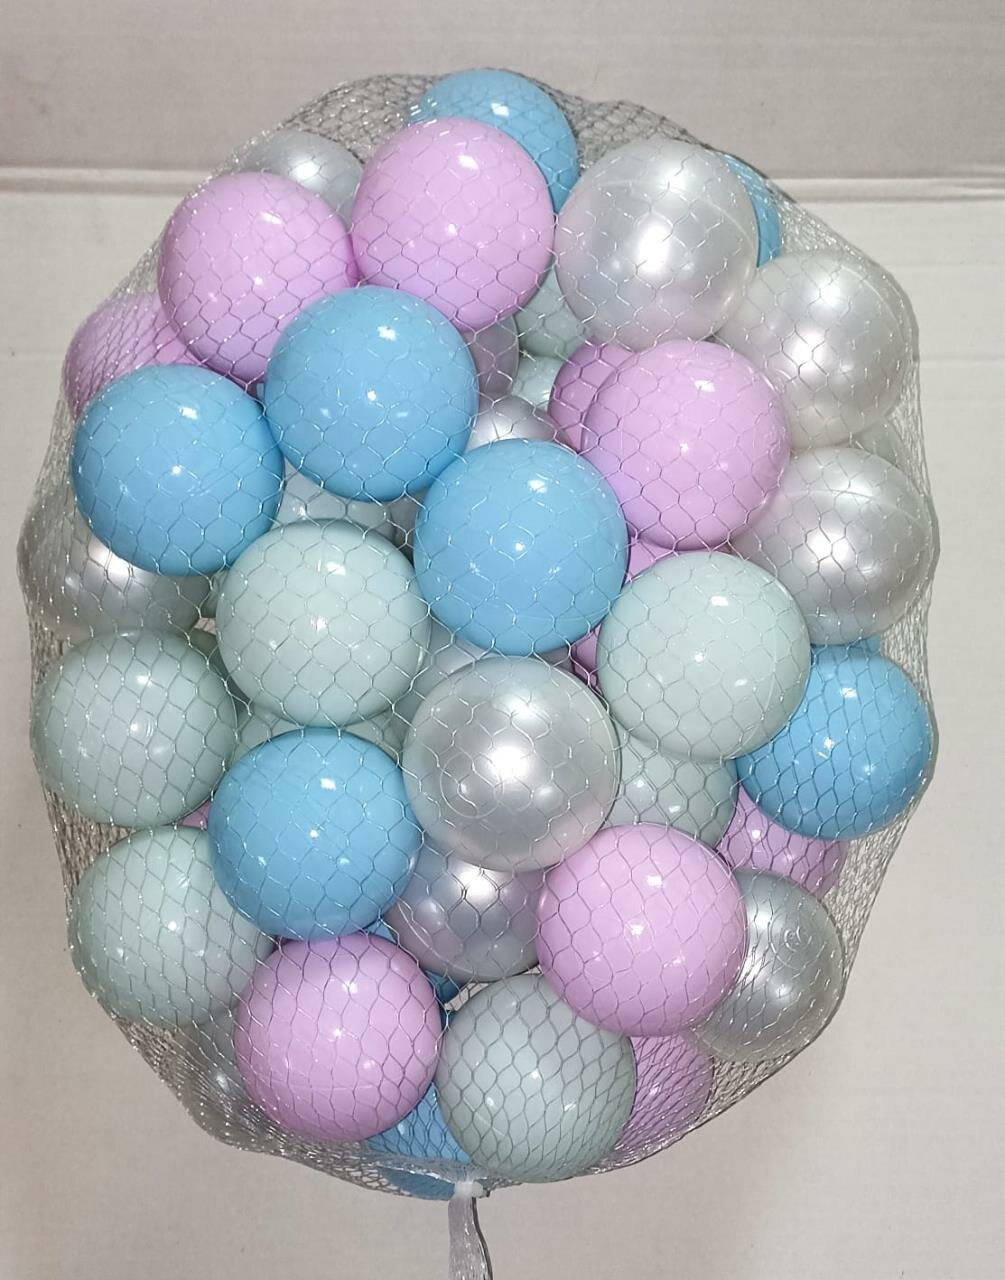 Мячики для сухого бассейна 70 мм (4 цвета), 50 штук, в сетке 35x30x25 см